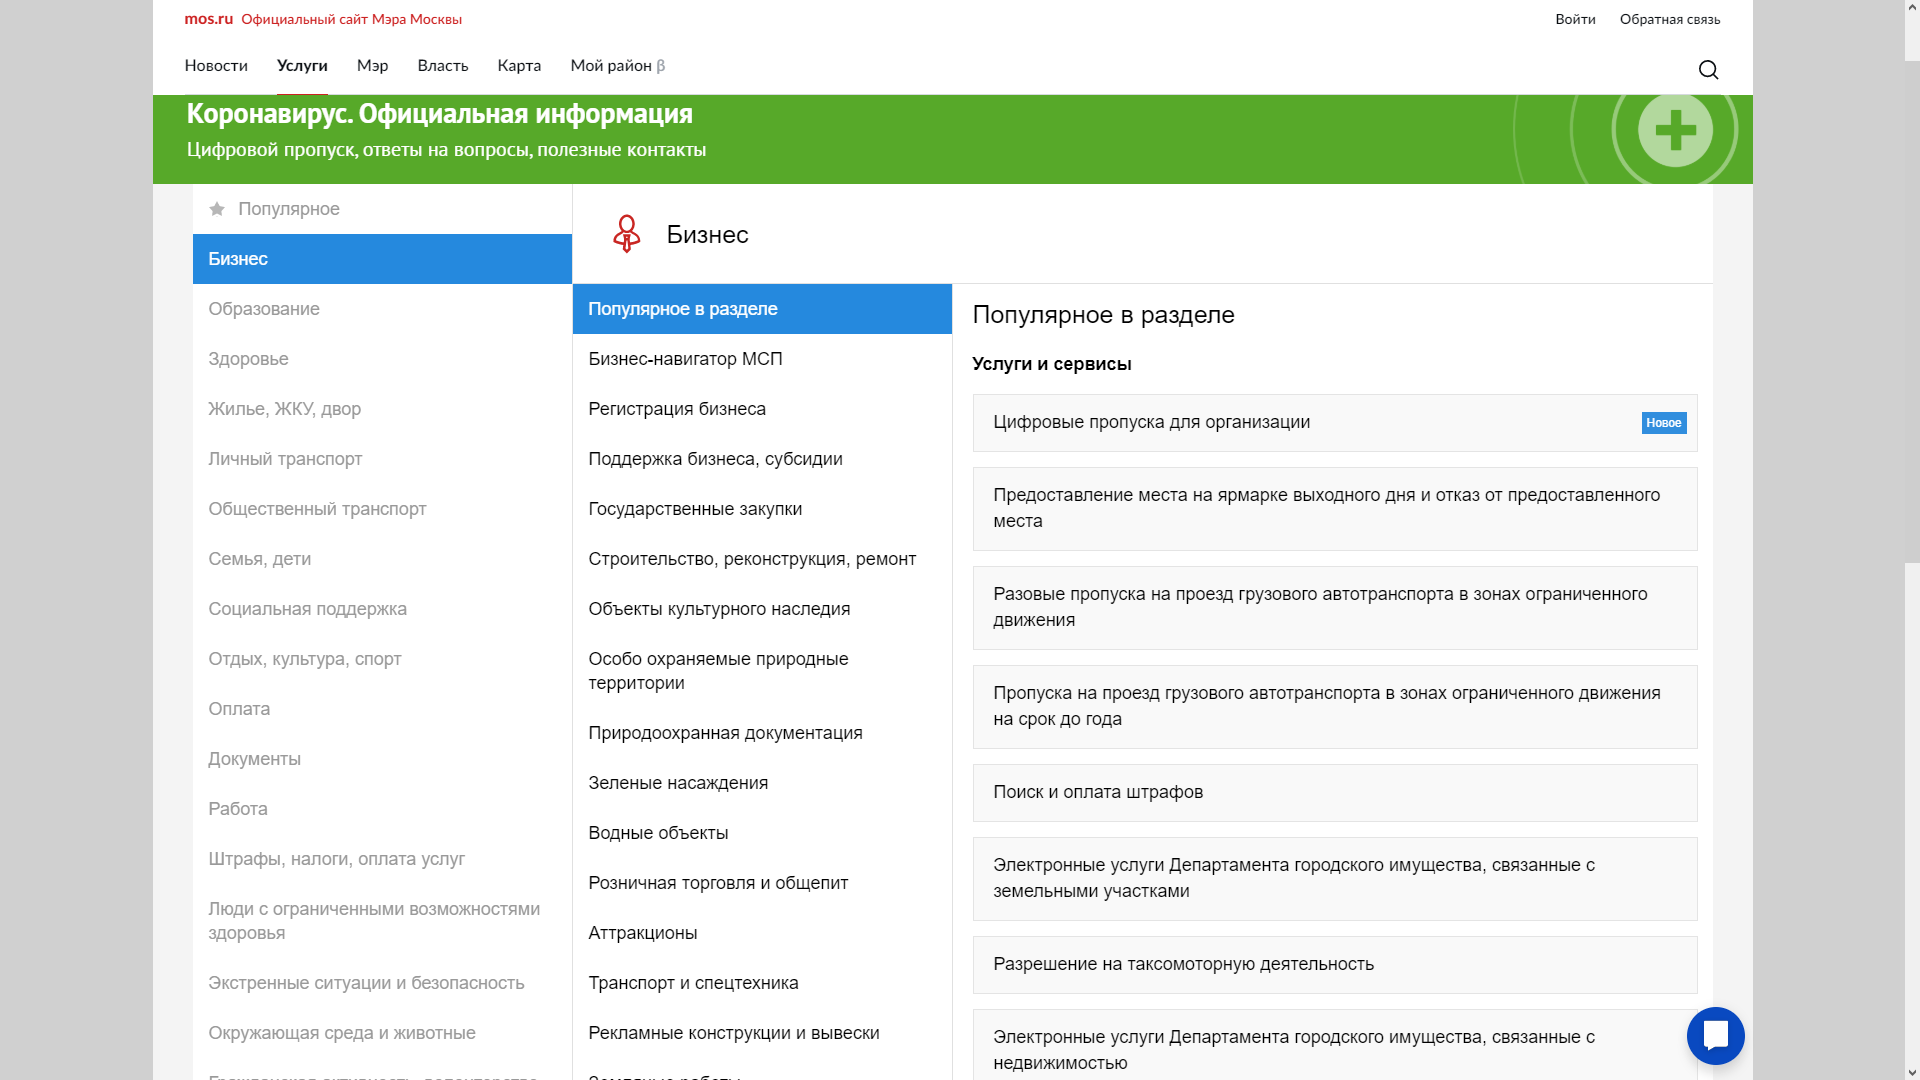 Owa.mos.ru — единая почтовая система. вход в систему. - mos.ru неофициальный сайт